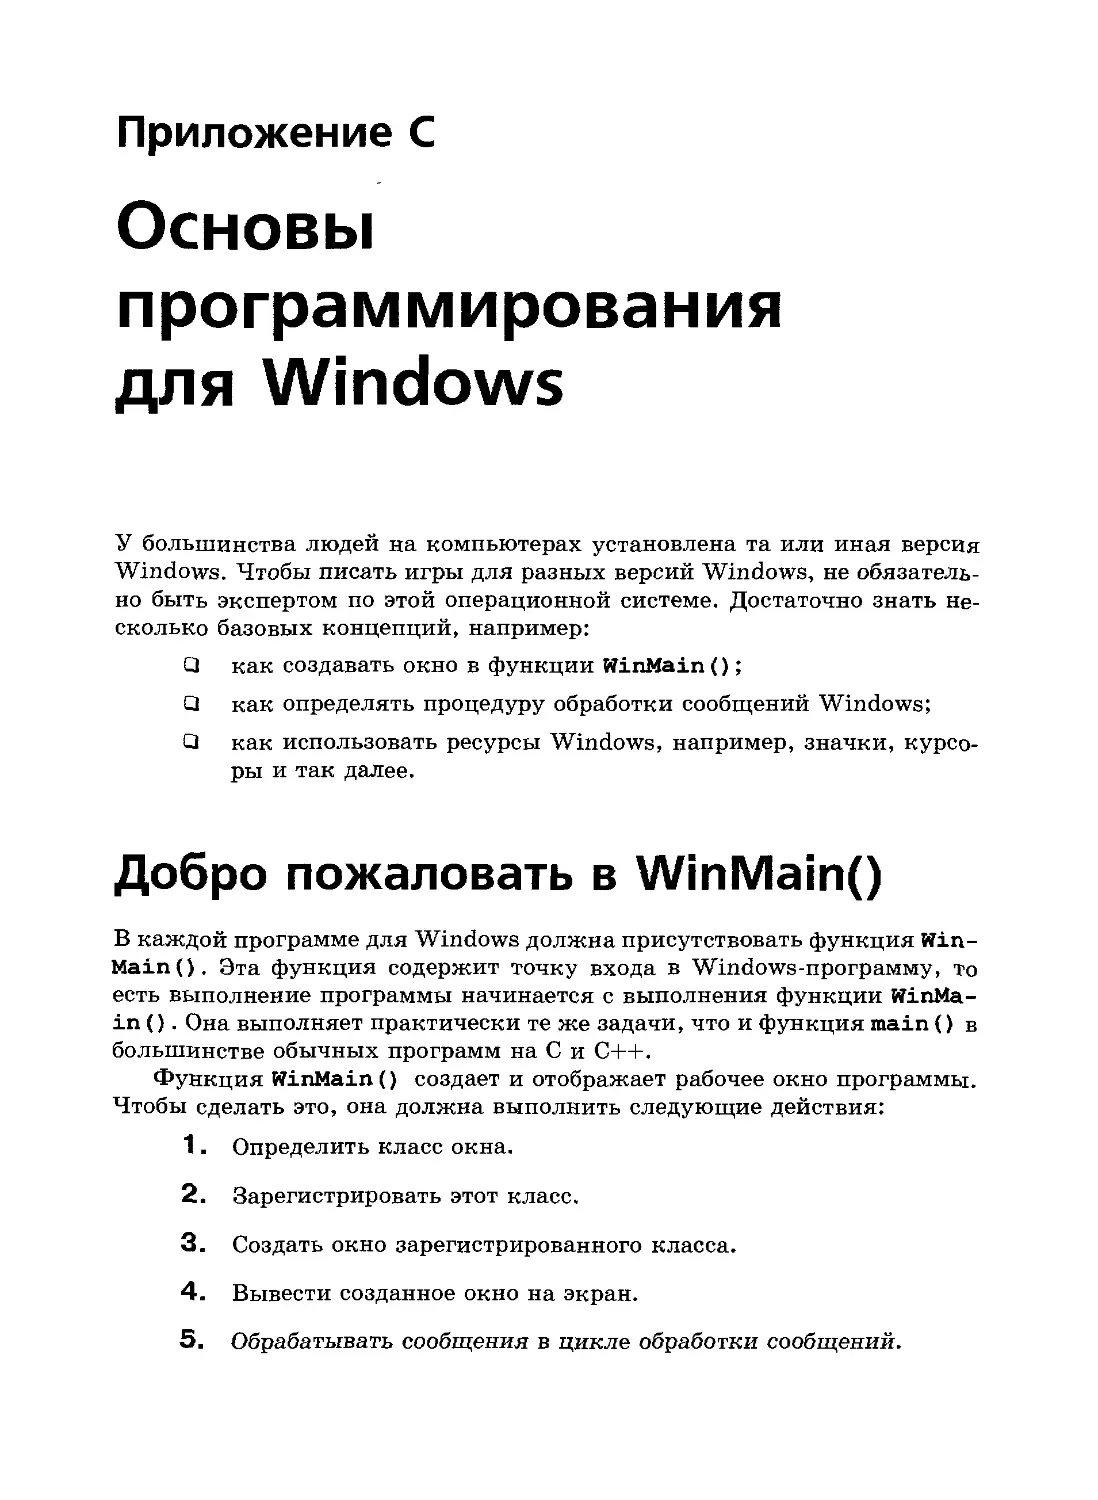 Приложение C. Основы программирования в Windows